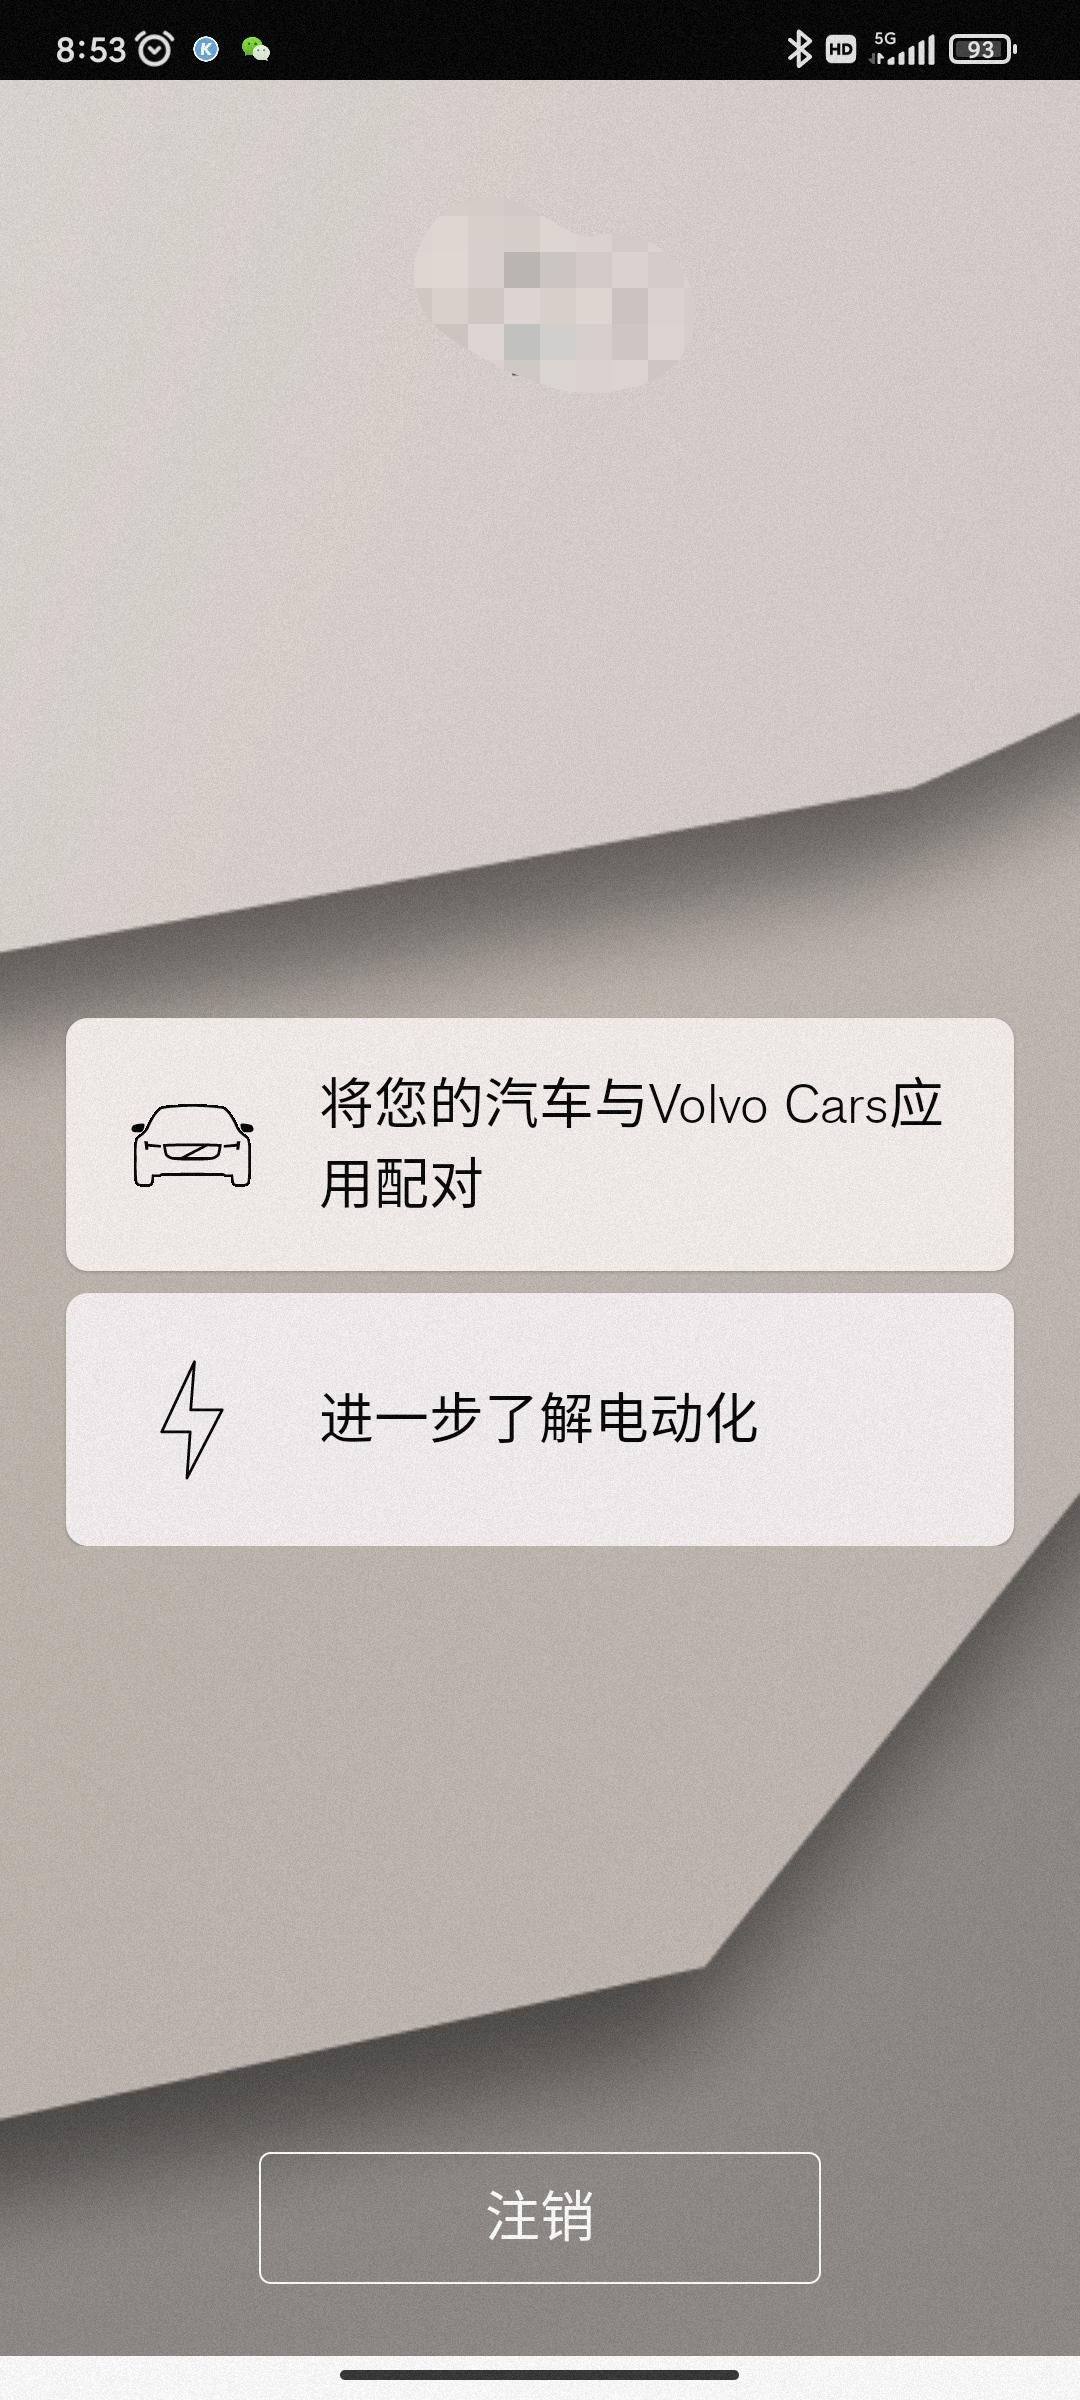 沃尔沃XC60 关于22款 volvo cars 的问题已经注册并且车机和手机已经匹配了，为嘛登入还是现实需要匹配？